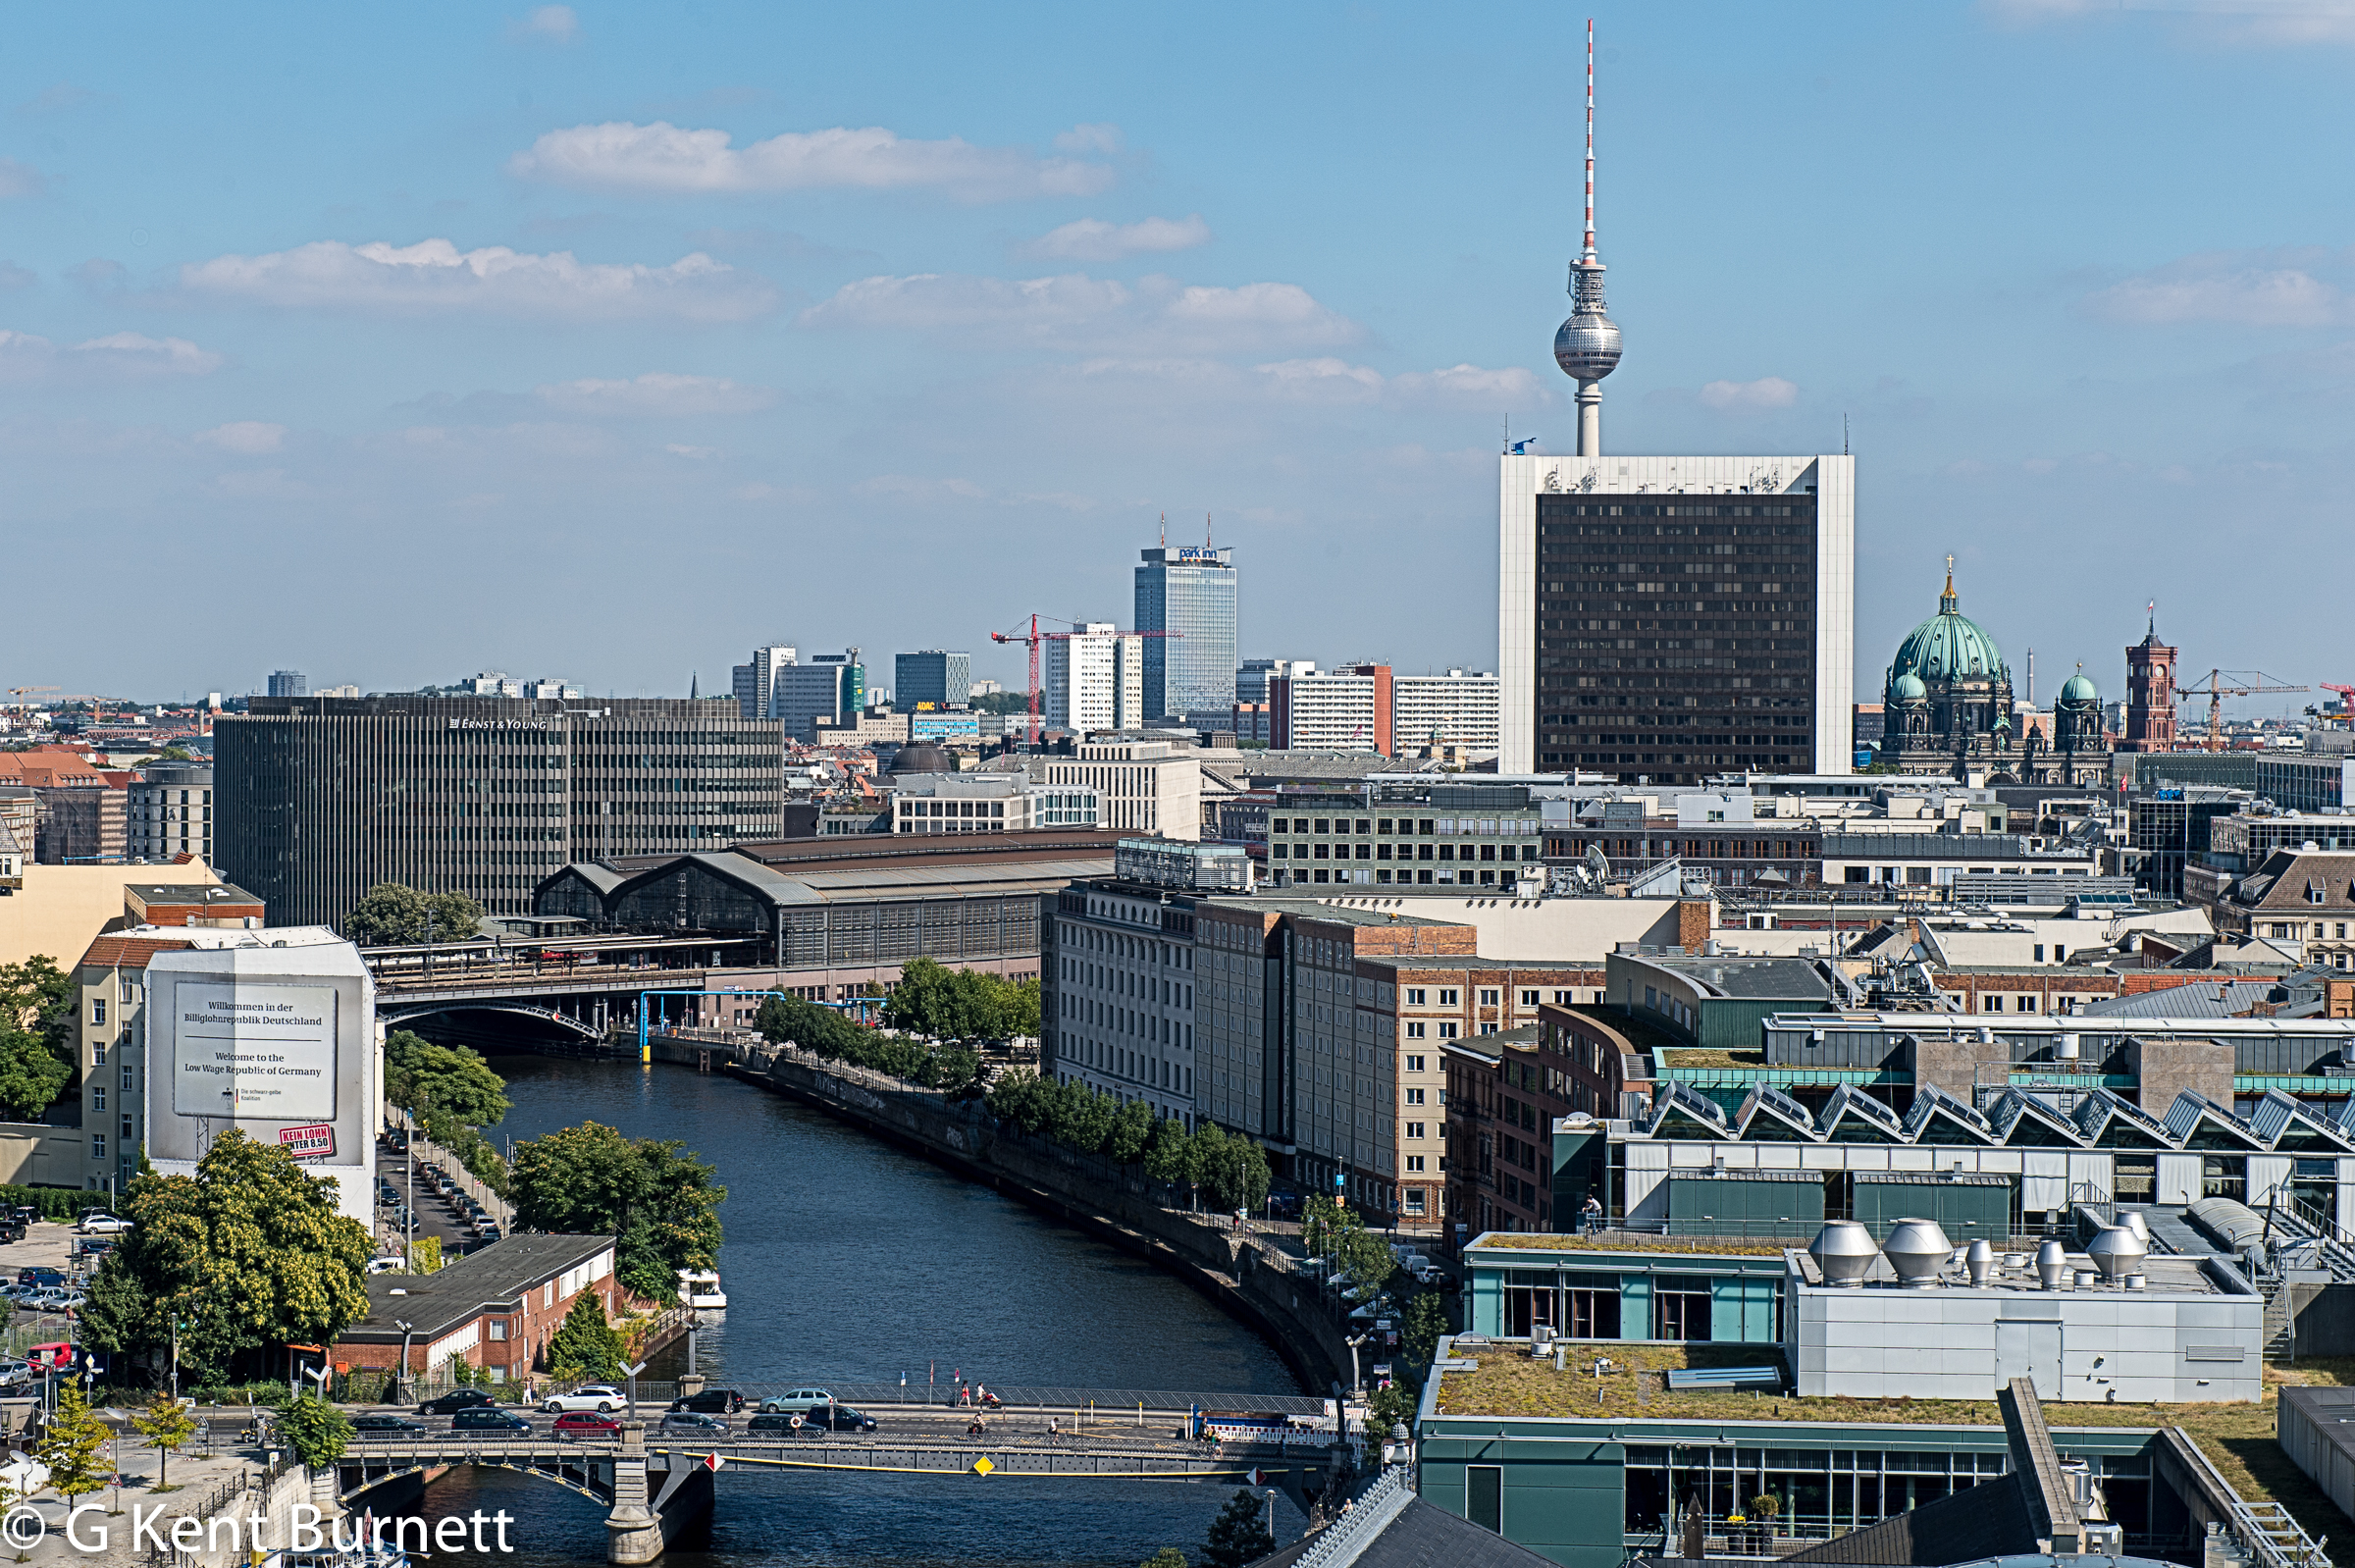 Berlins Fernsehturm (TV Tower)